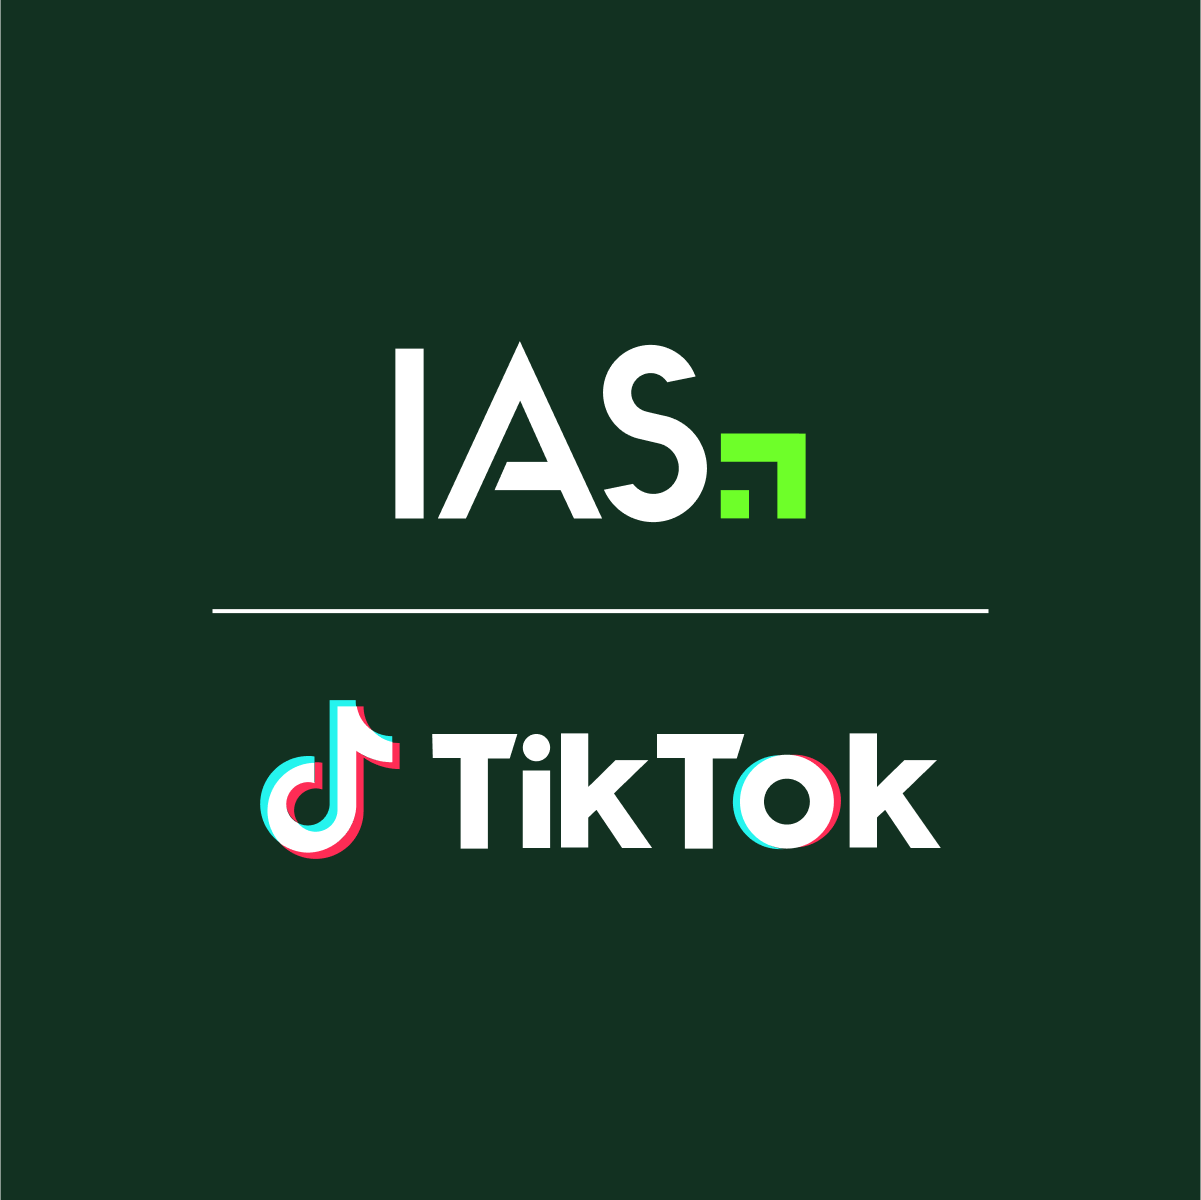 IAS and TikTok logos.